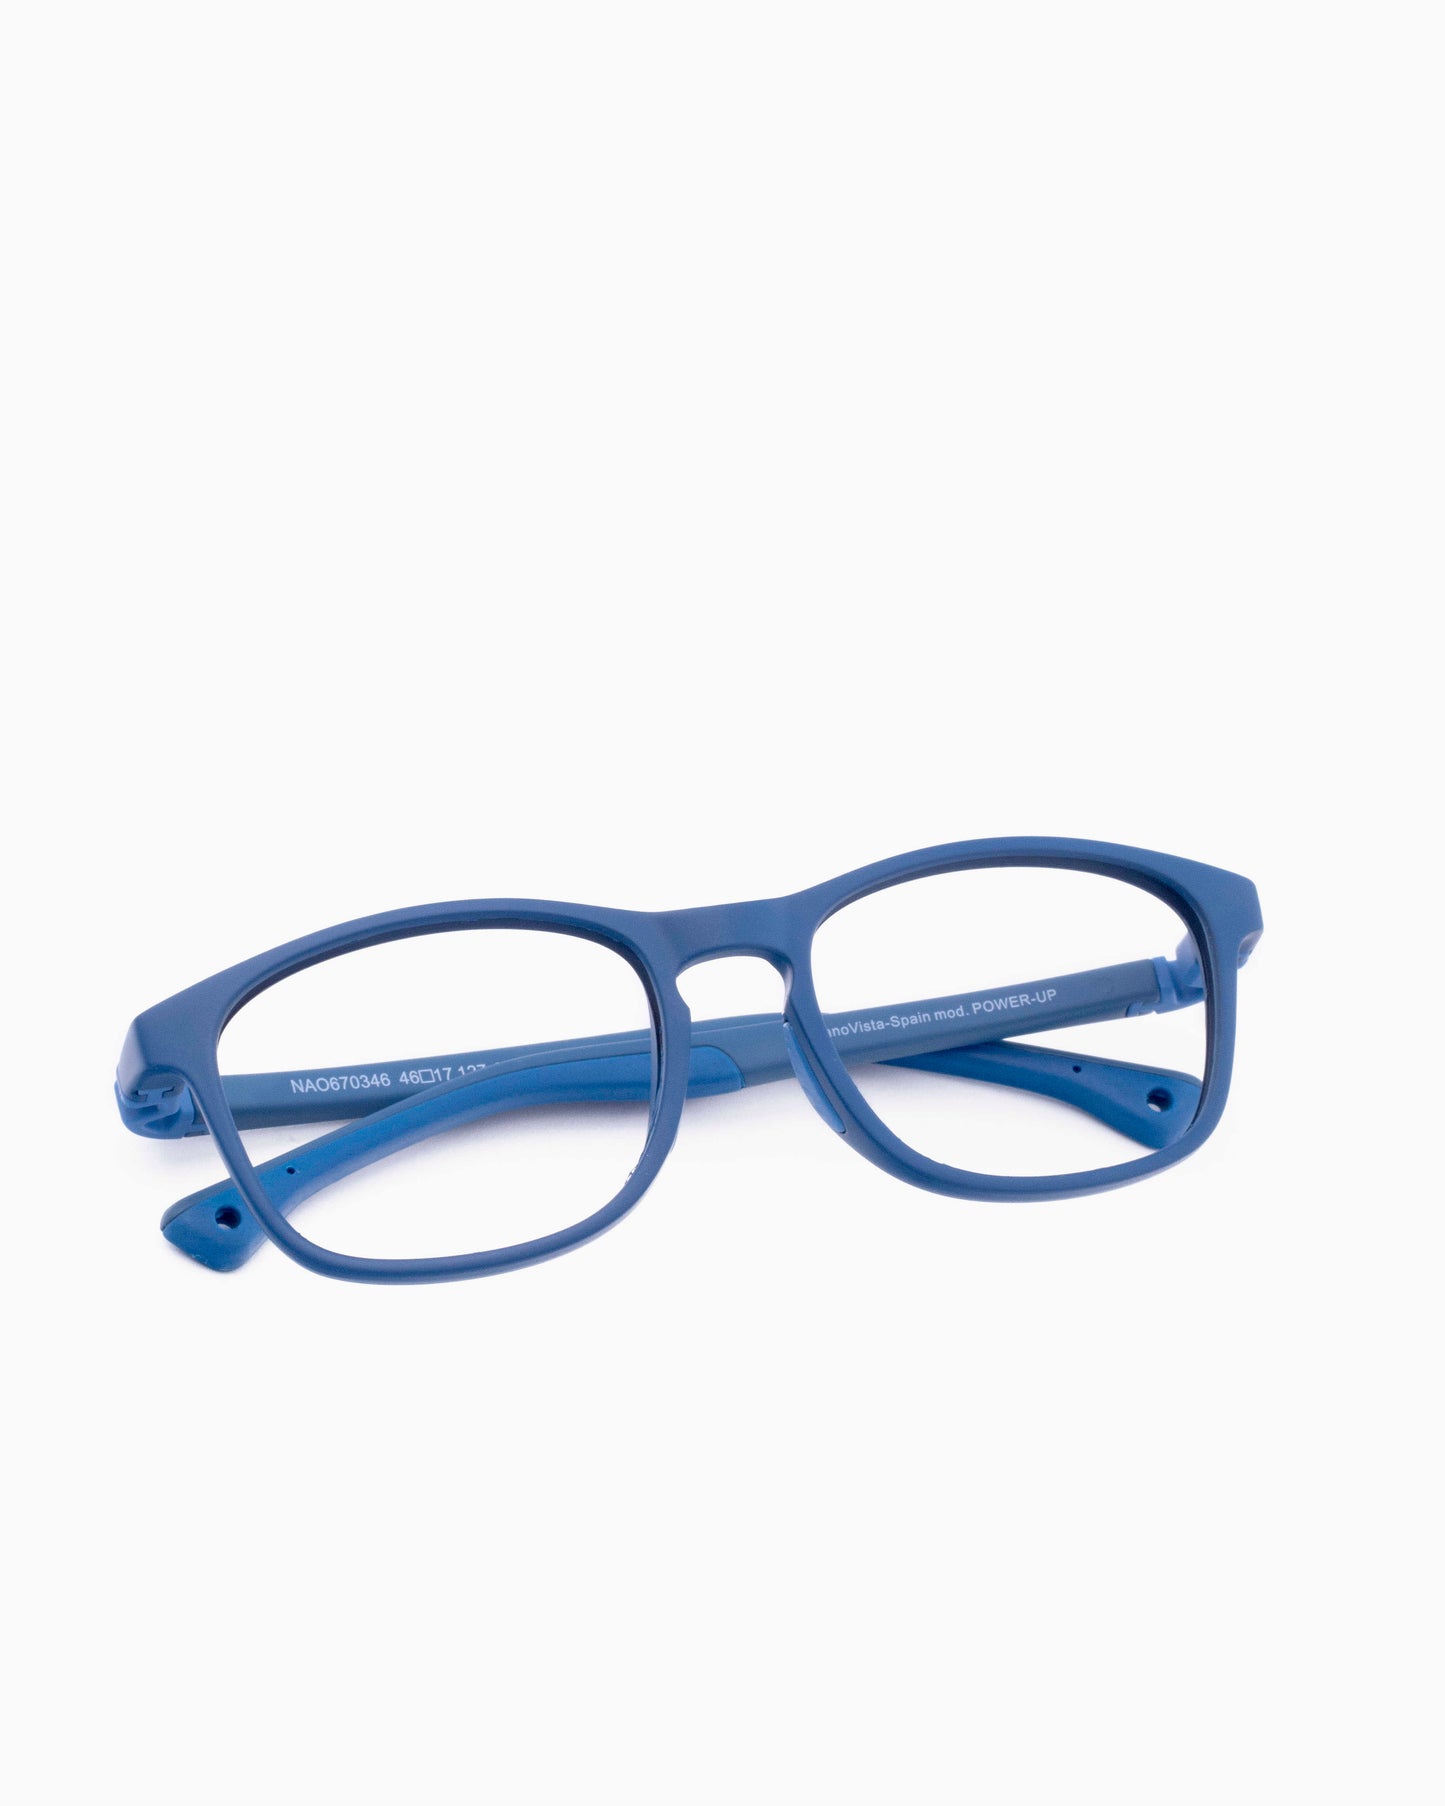 Nanovista Kids - POWERUP - MTMARMAR | Bar à lunettes